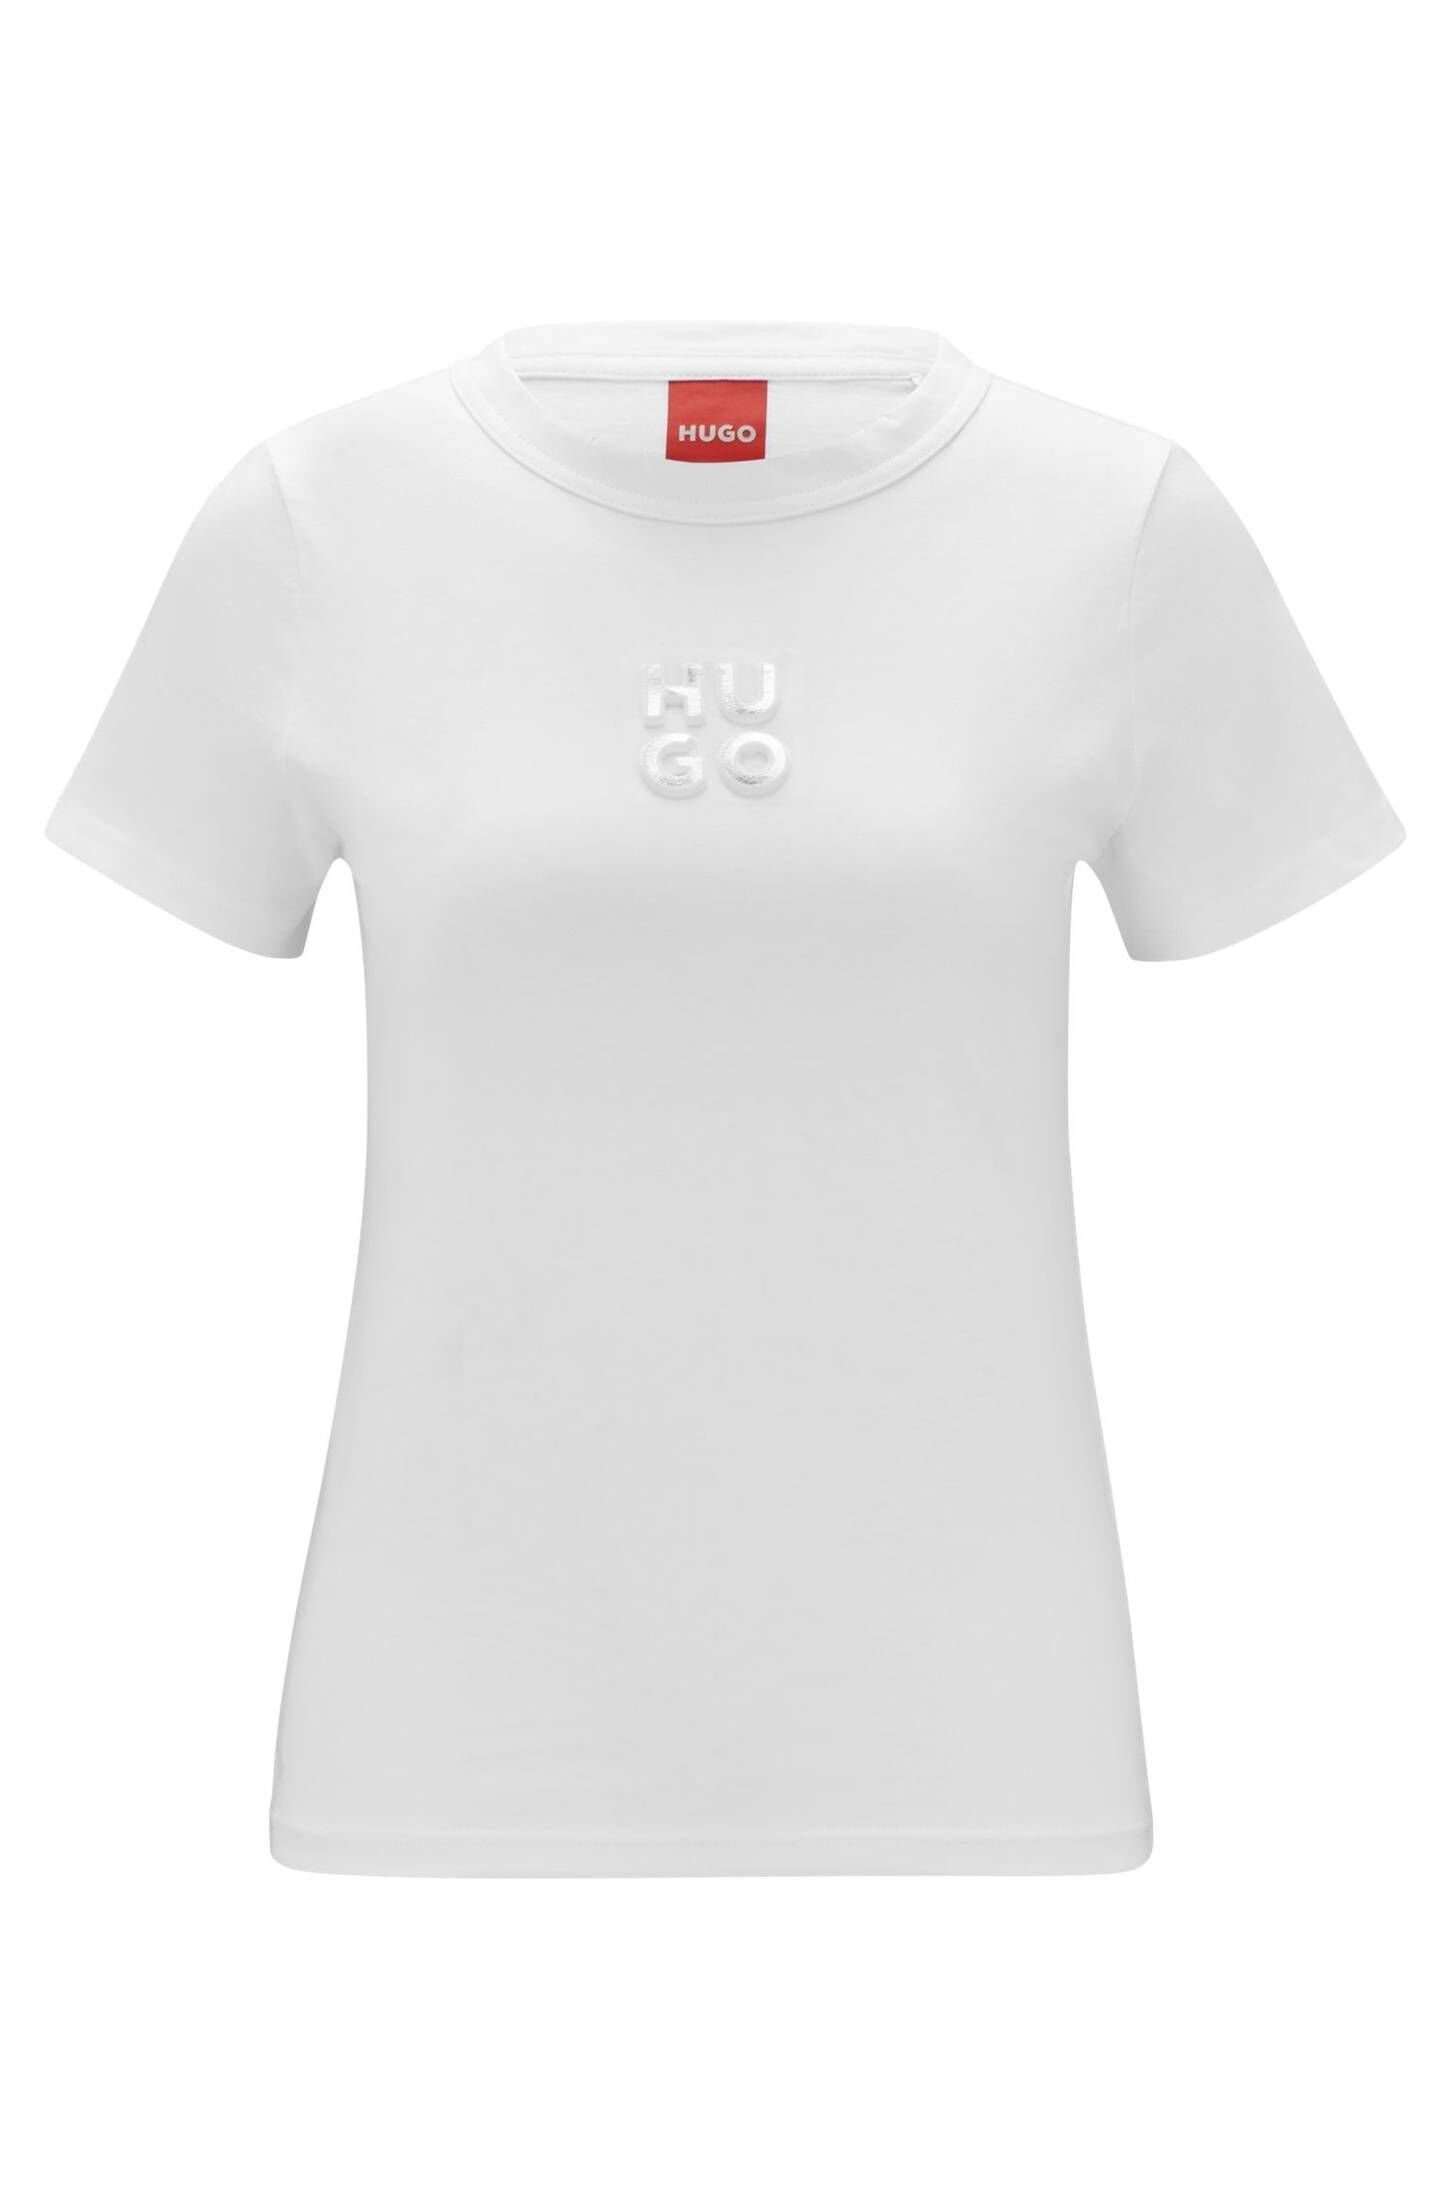 Hugo Boss Damen OTTO online kaufen T-Shirts 